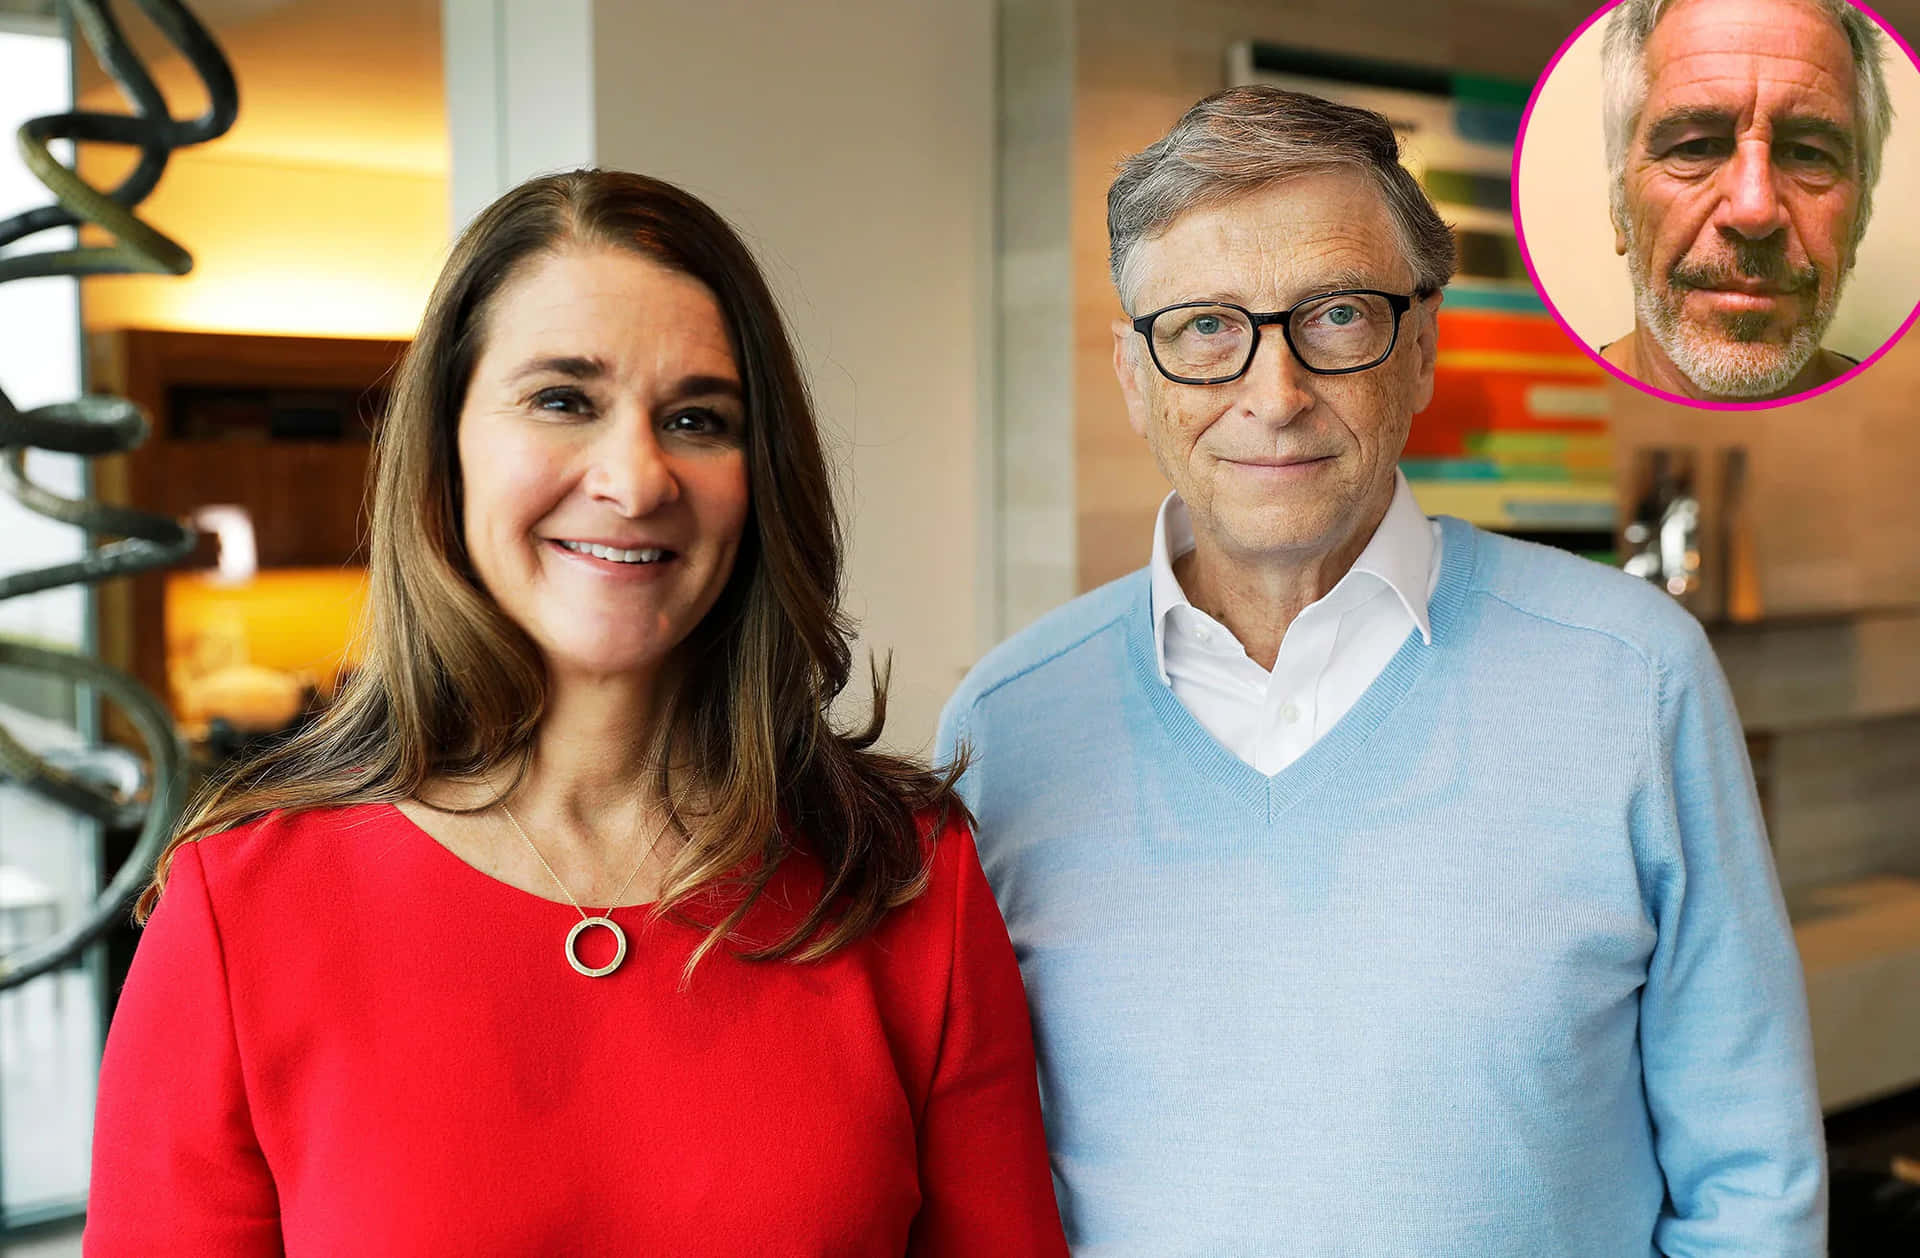 Bill Gates pictured with Jeffrey Epstein